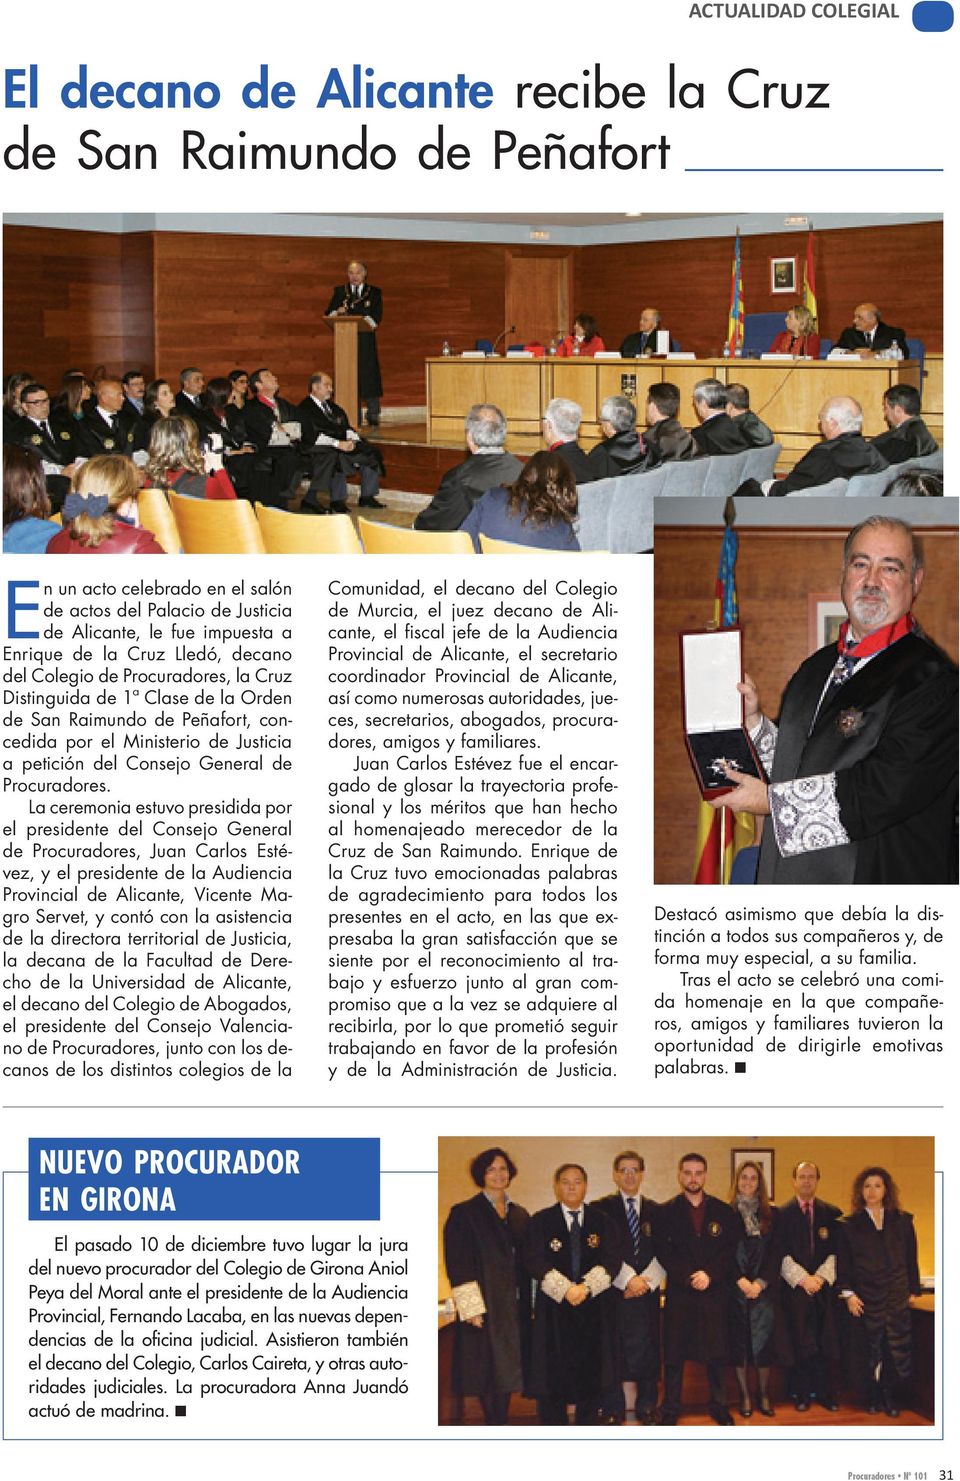 La ceremonia estuvo presidida por el presidente del Consejo General de Procuradores, Juan Carlos Estévez, y el presidente de la Audiencia Provincial de Alicante, Vicente Magro Servet, y contó con la